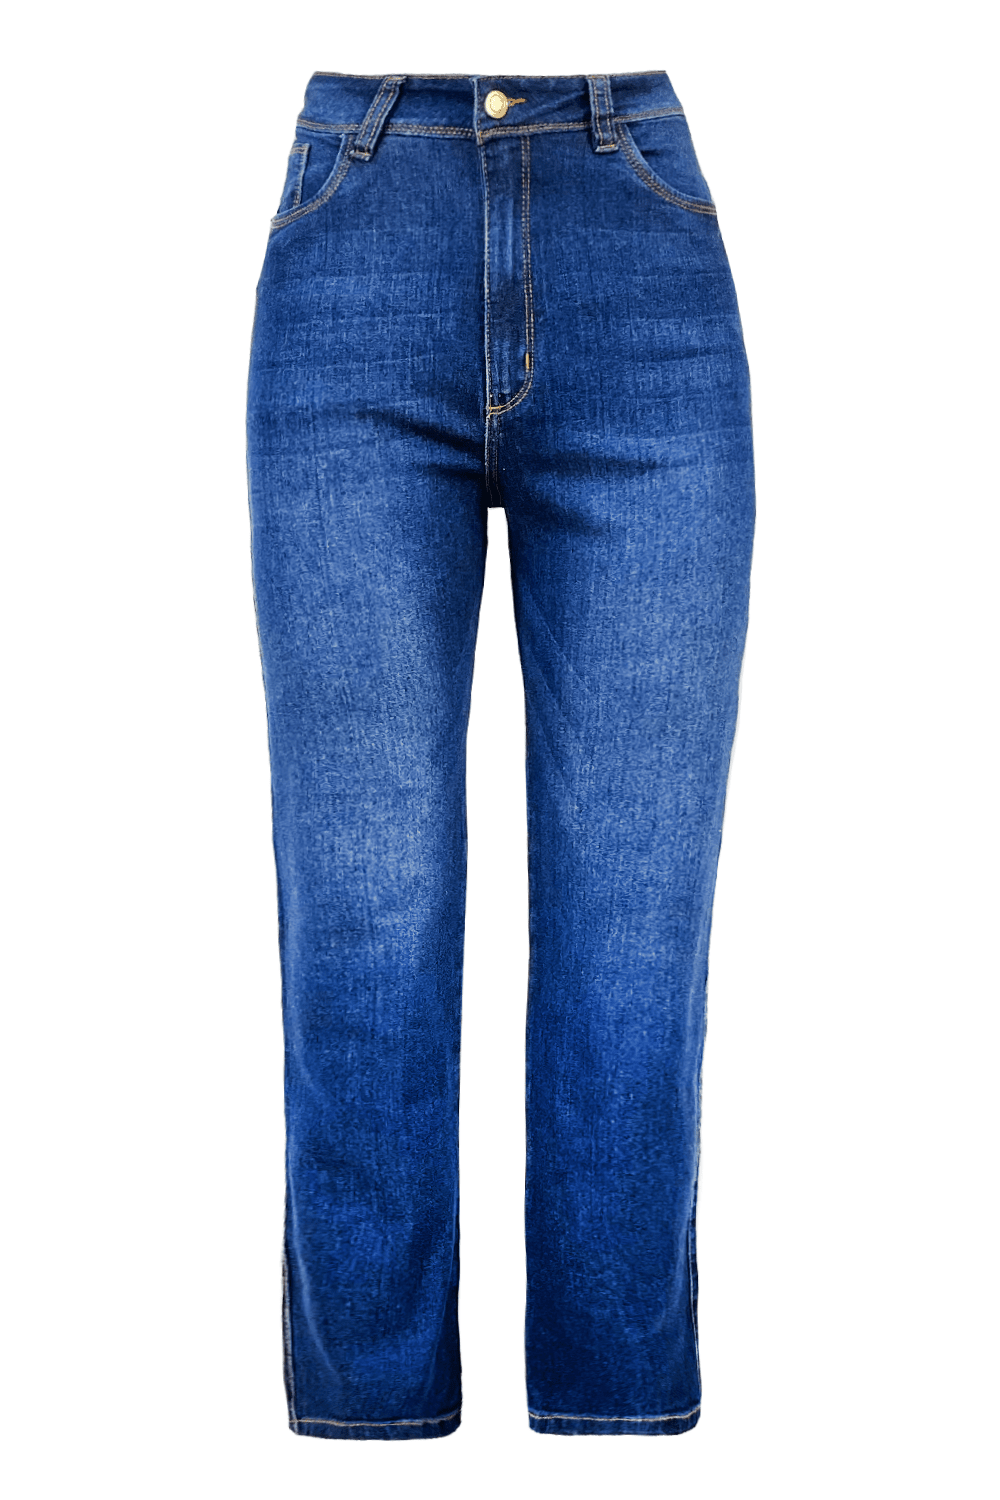 Katya Jeans Denim Blue High Rise – Carolina